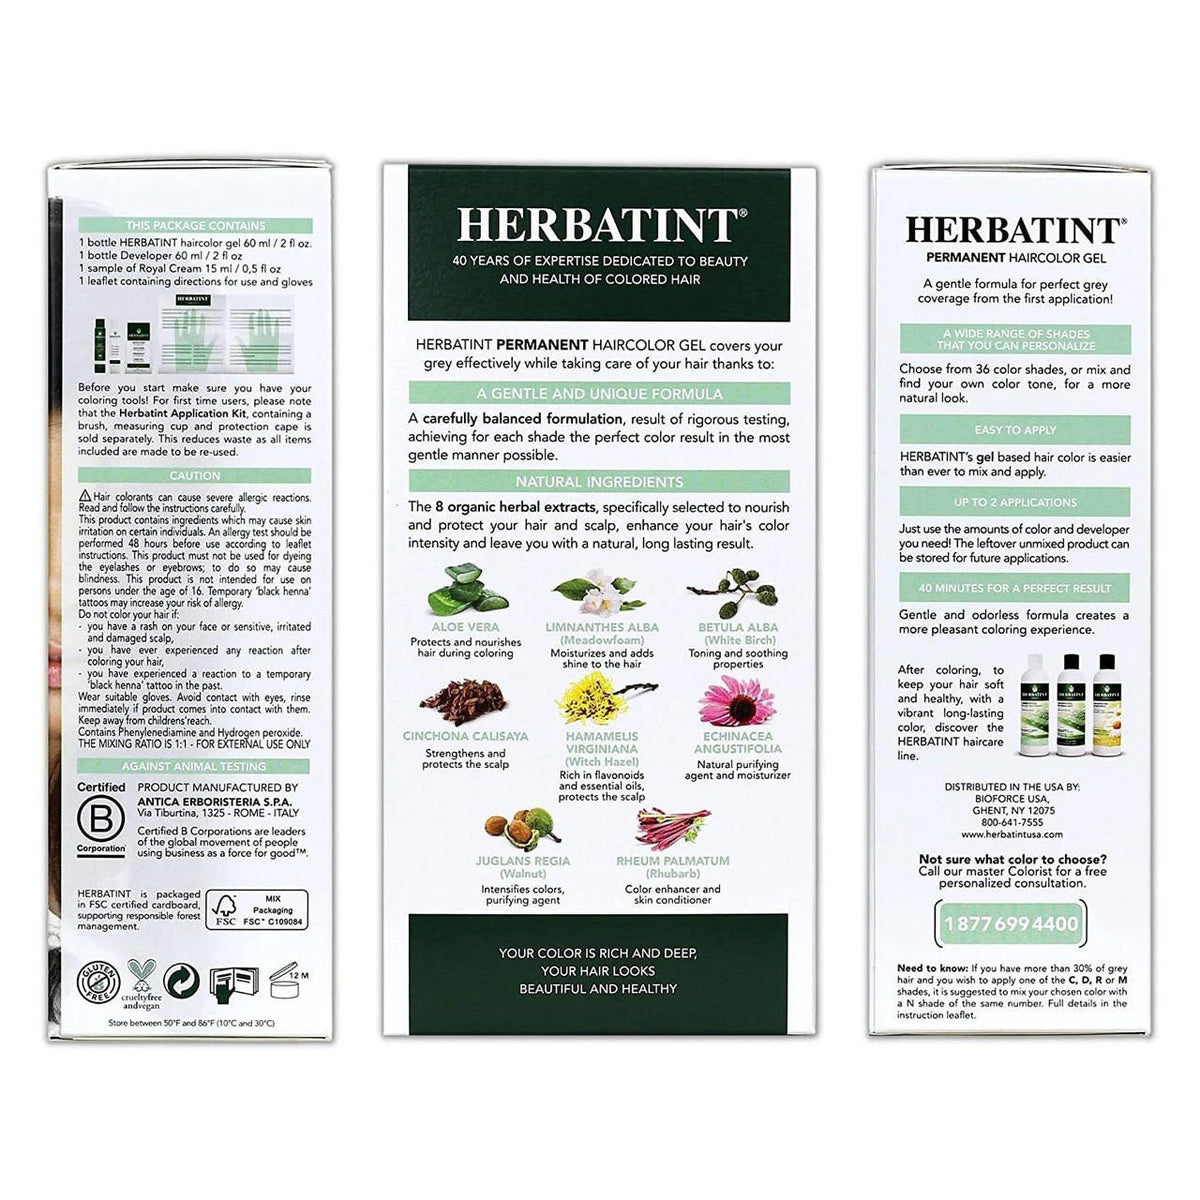 Herbatint 7N-Blonde-Permanent Hair Color Gel 4.56 fl oz Liquid